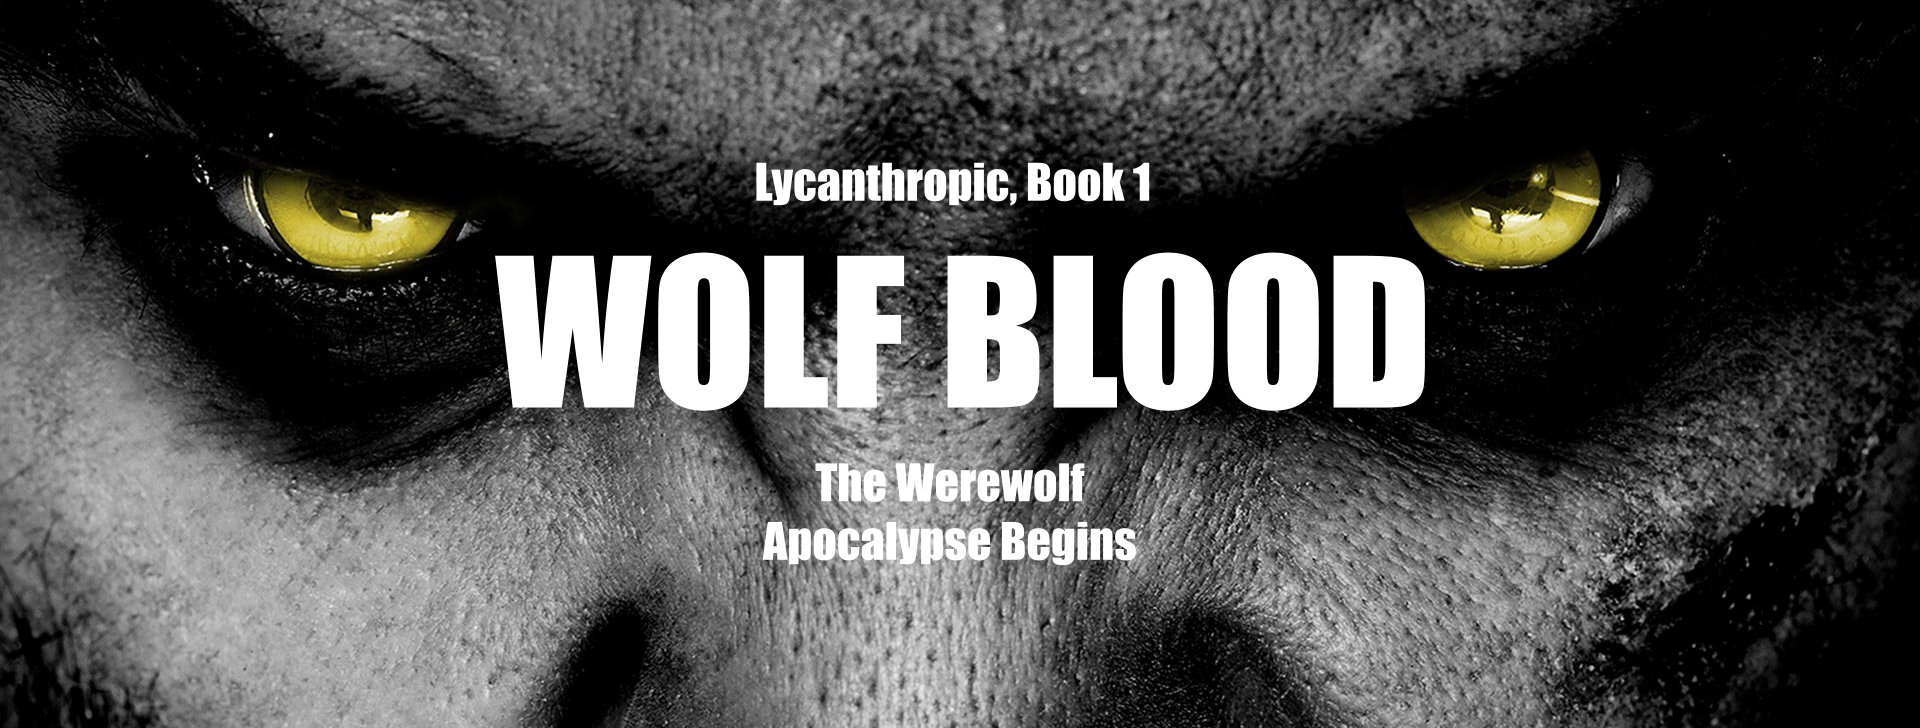 The werewolf apocalypse begins